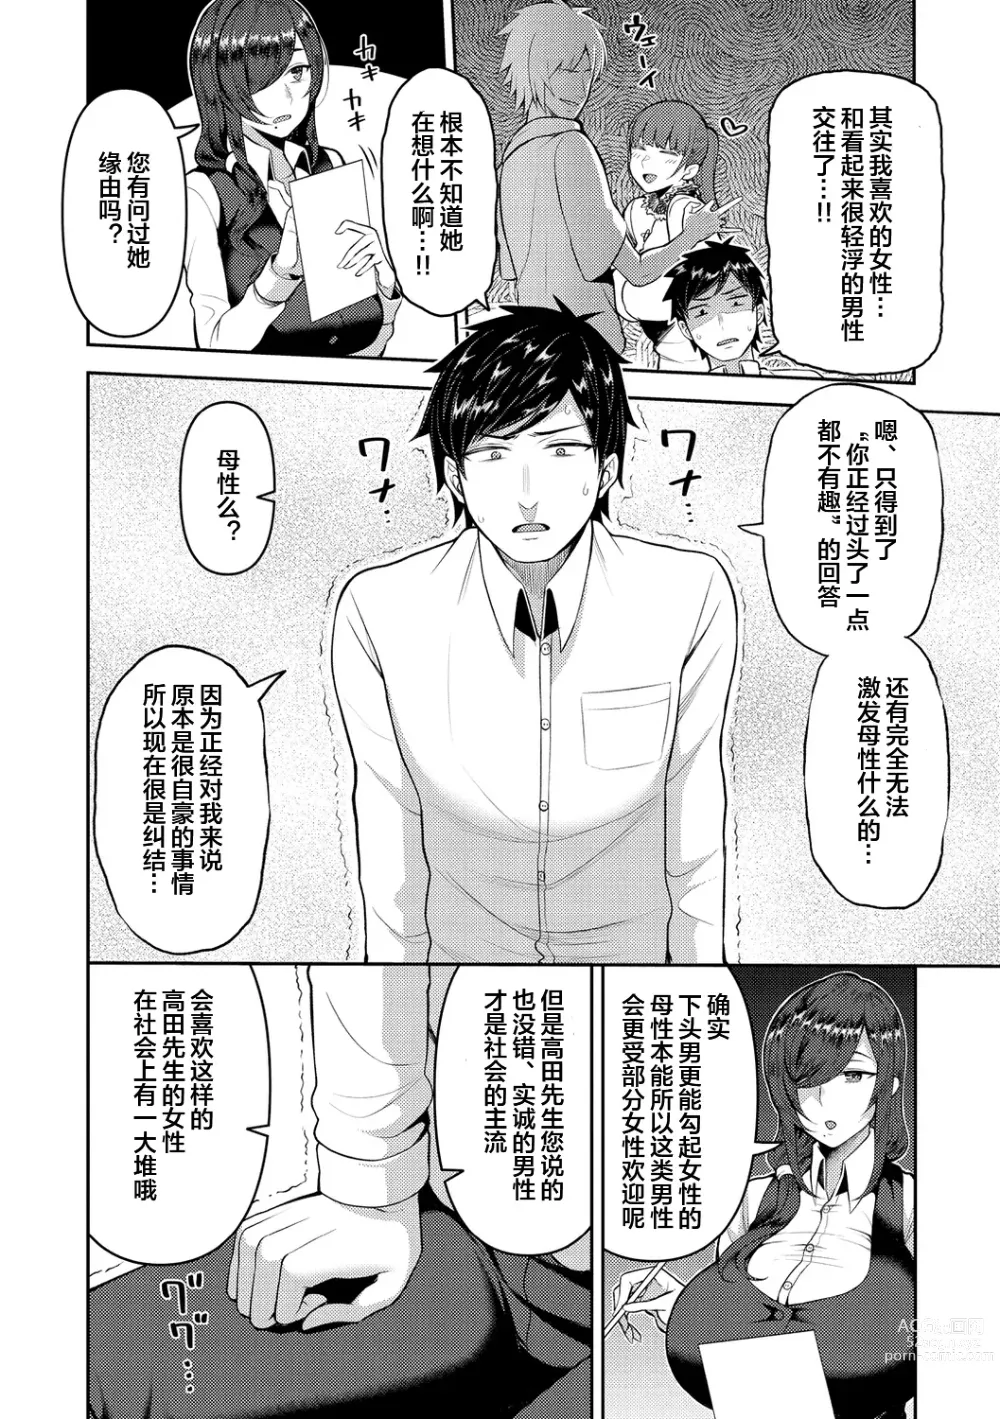 Page 26 of manga Amaete Hoshii no - I want you to spoil me